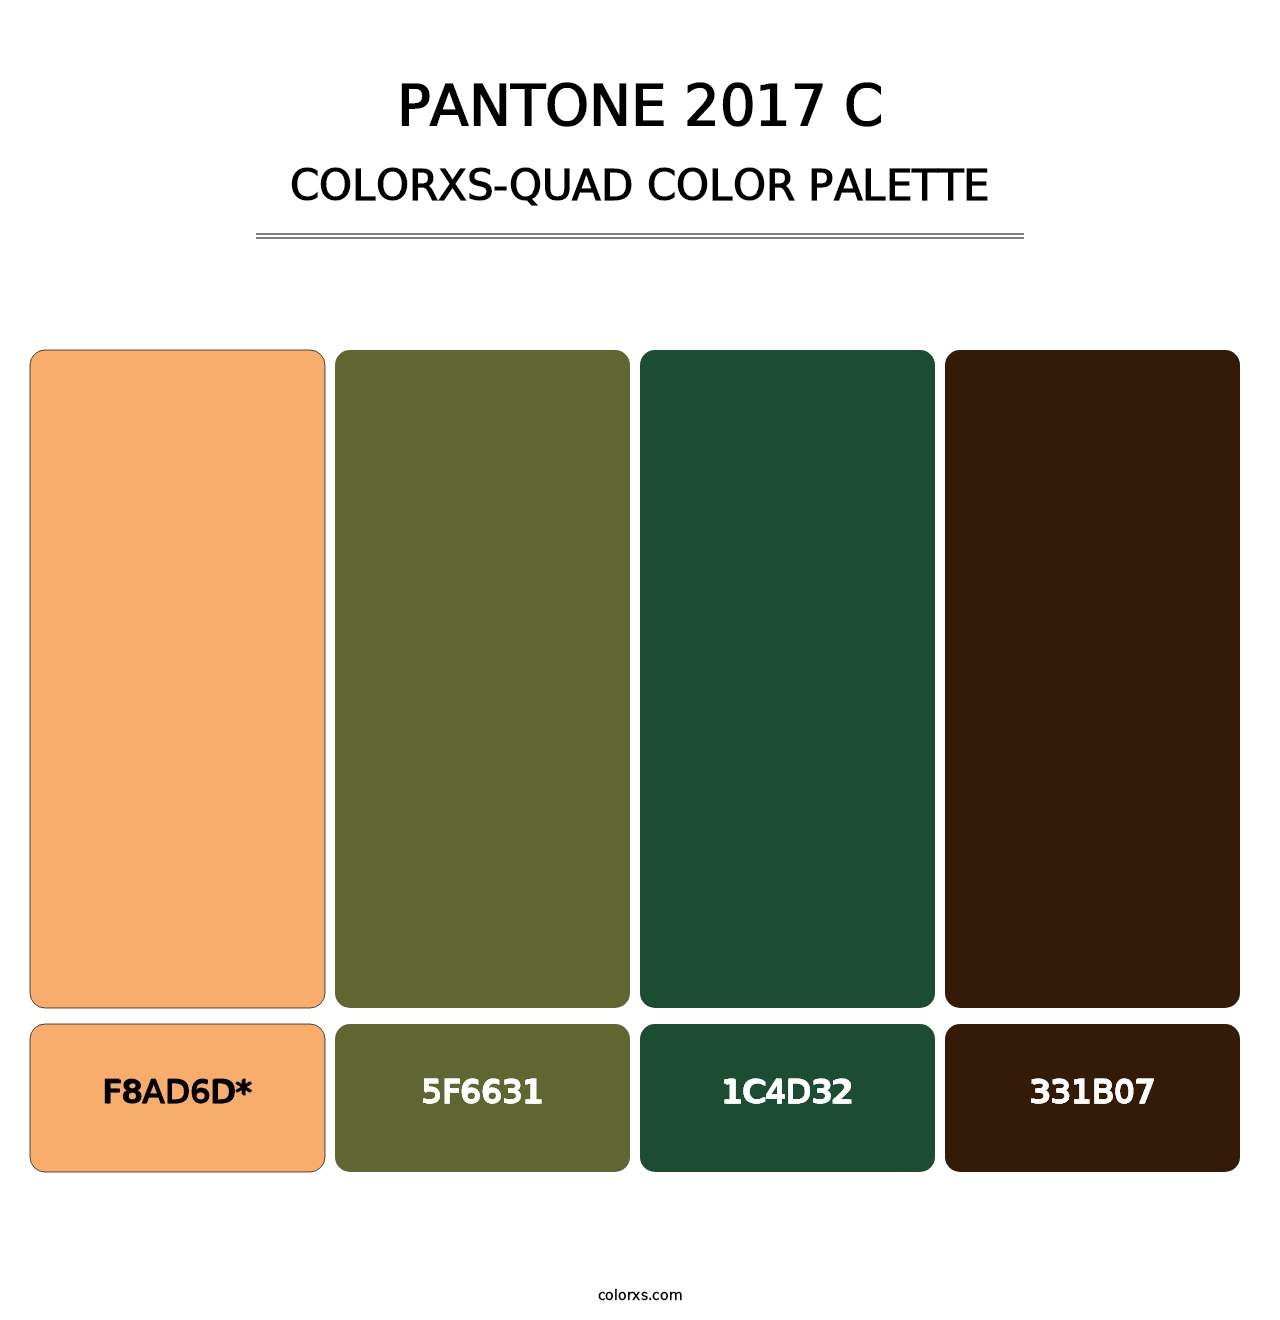 PANTONE 2017 C - Colorxs Quad Palette